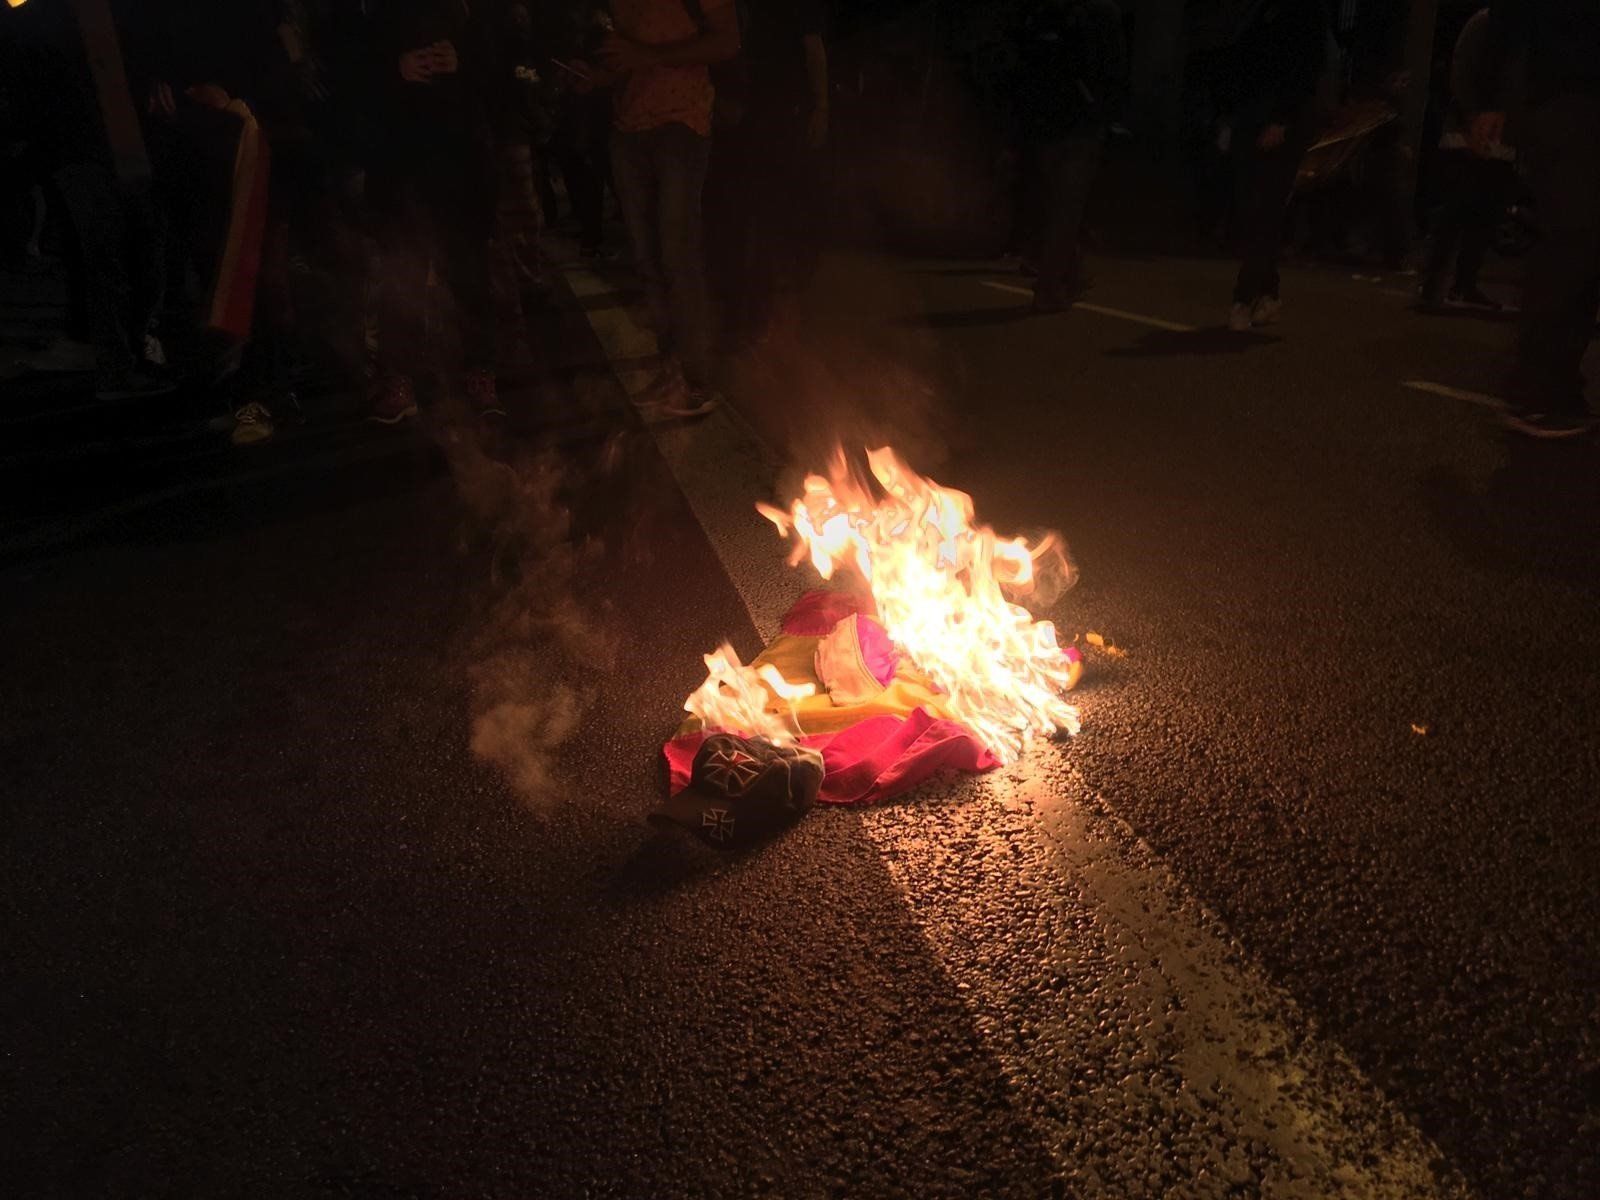 Bandera preconstitucional en llamas, anoche en Barcelona.